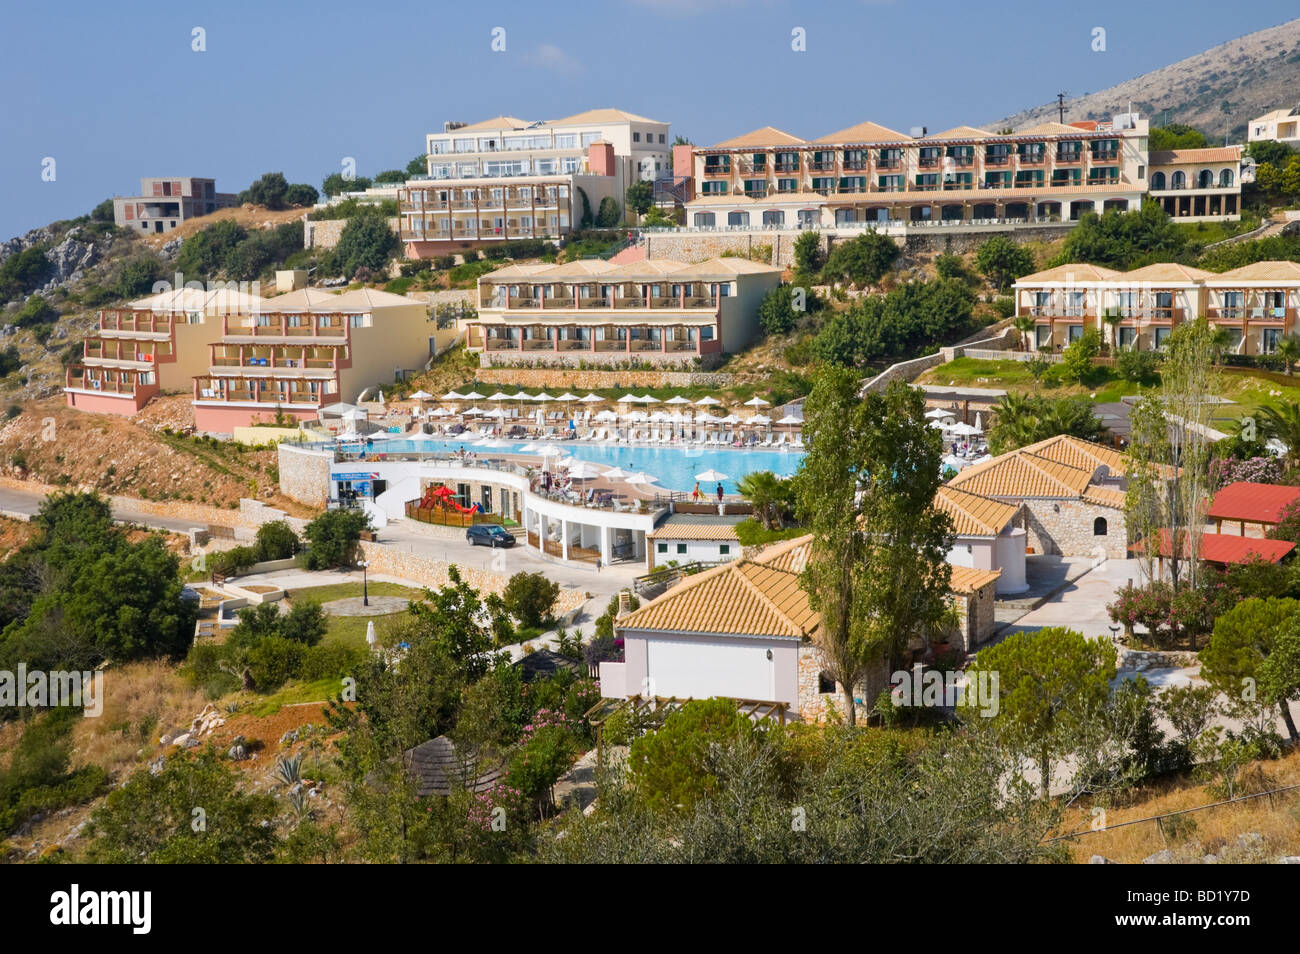 Ferienort am Hang in der Nähe von Skala auf der griechischen Insel Kefalonia Griechenland GR Stockfoto